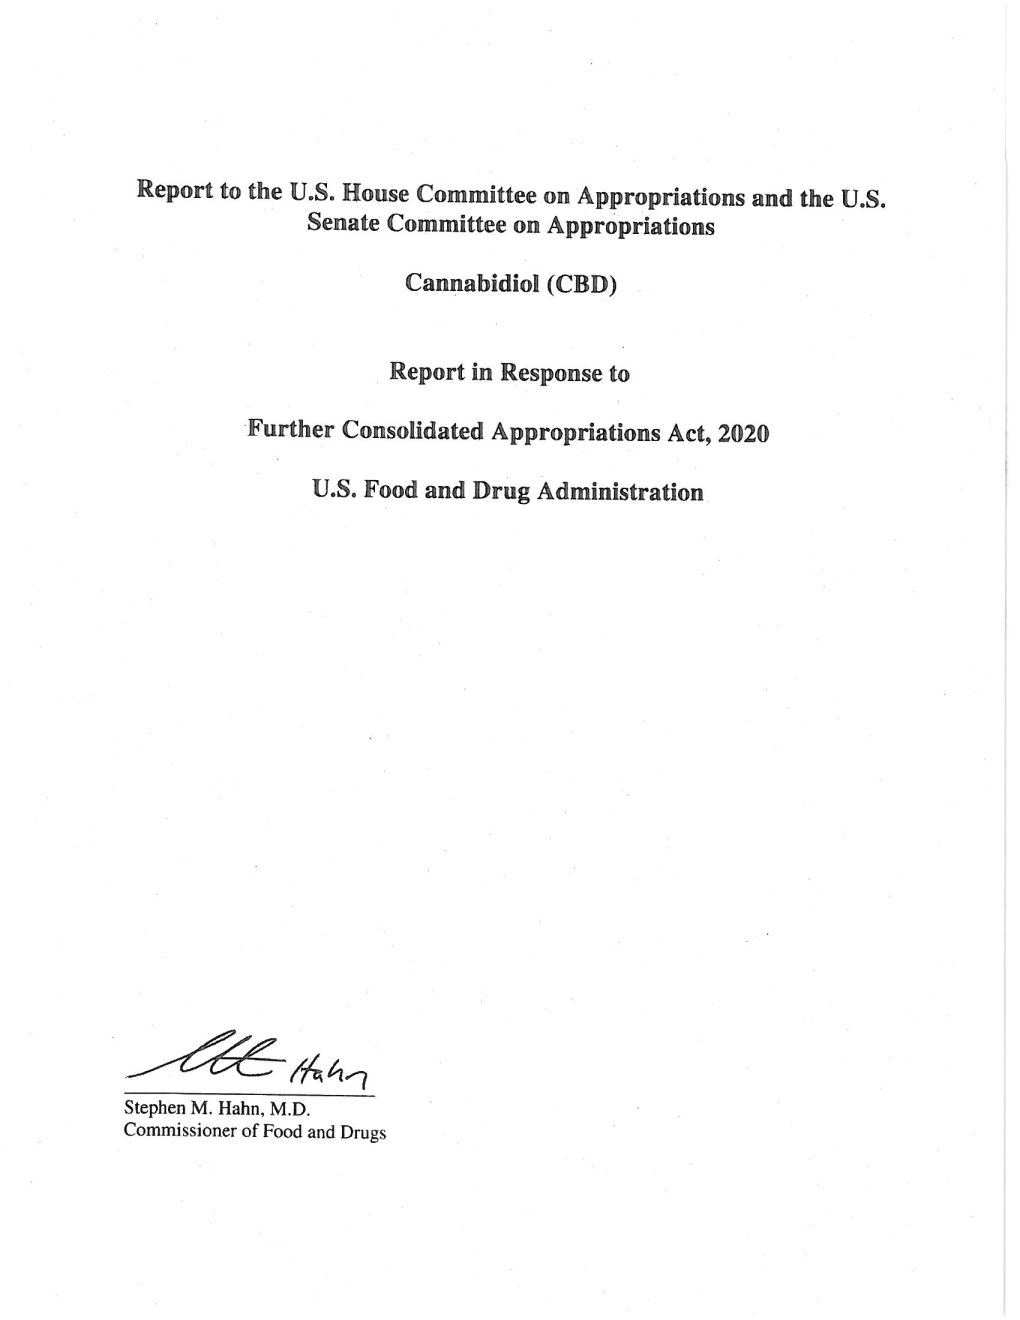 FDA-CBD-Report-To-Congress-March